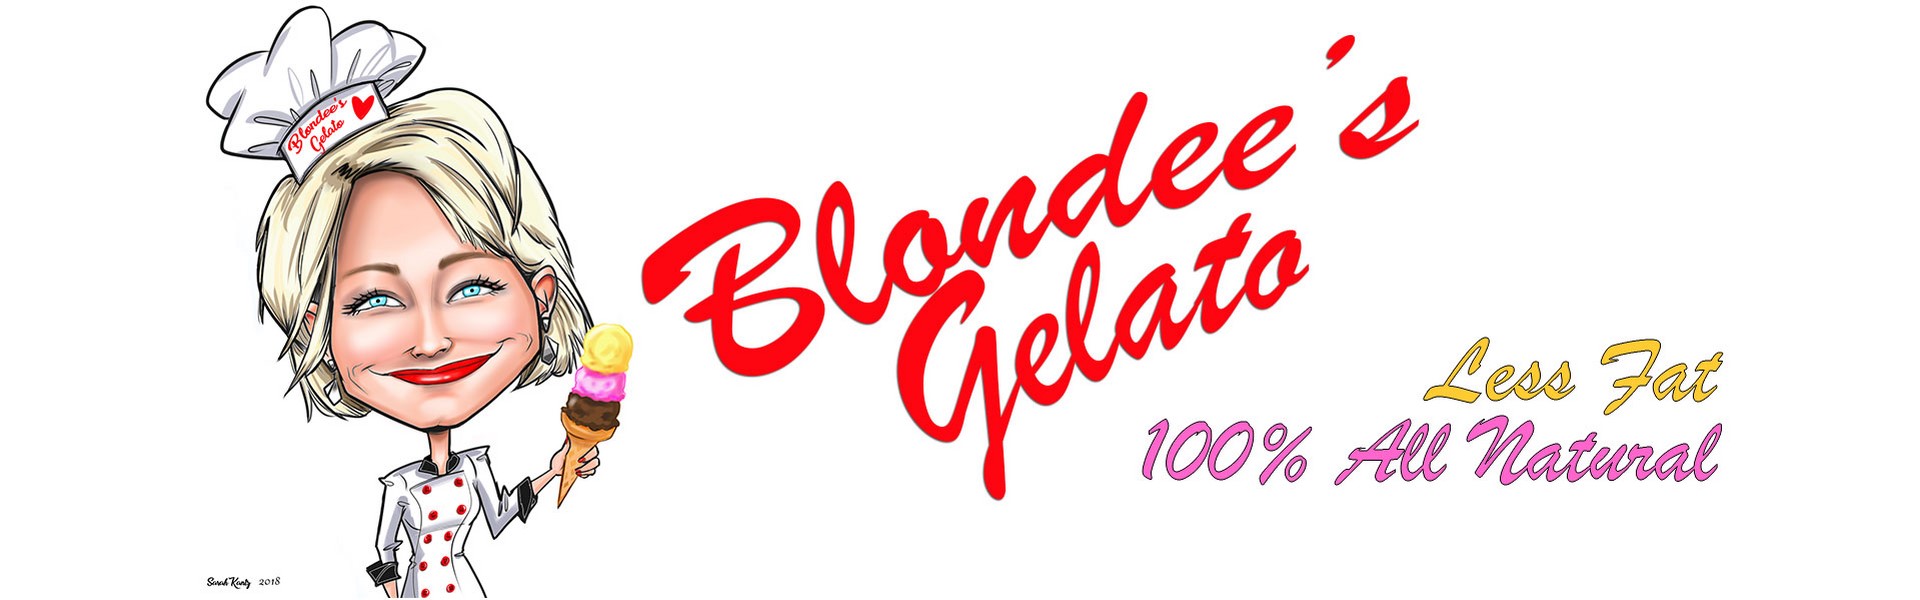 blondees-gelato-sl3.jpg